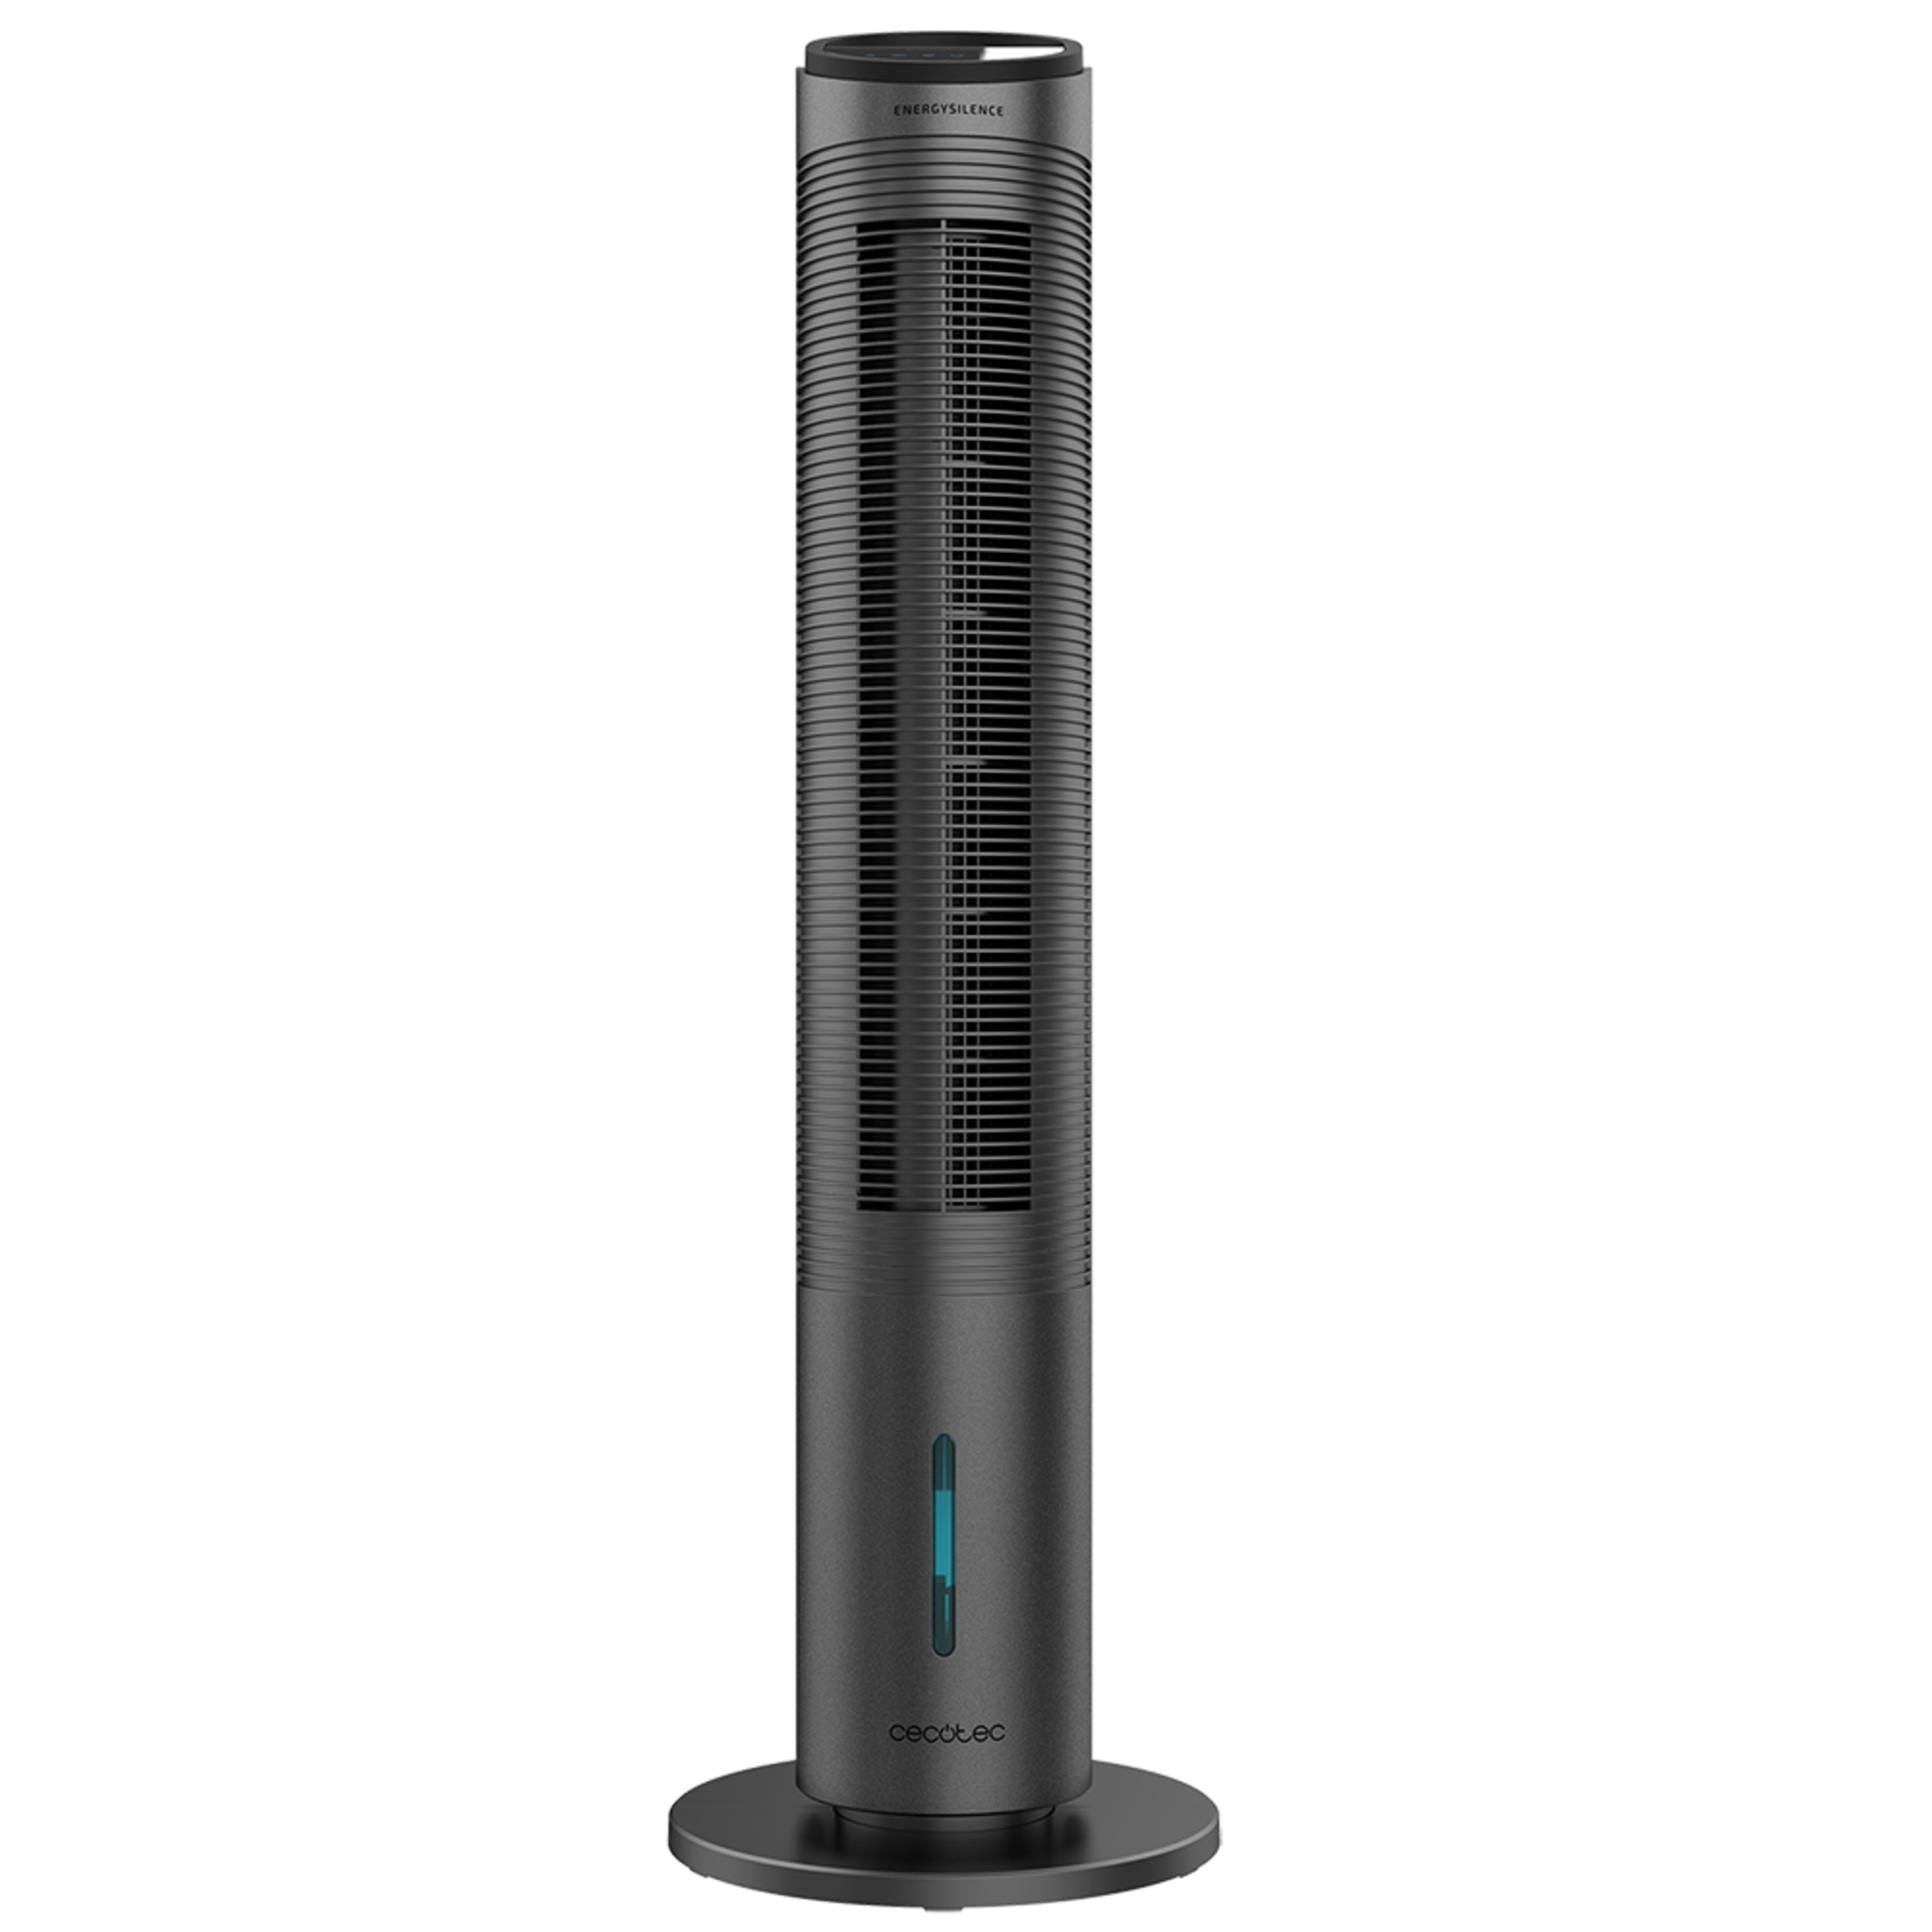 Torre EnergySilence 2000 Cool Tower Smart - Climatizador Evaporativo, Potencia 60 W, Depósito E xtraíble de 2 L, 3 Velocidades, 3 Modos con Oscilación, Temporizador, Control táctil